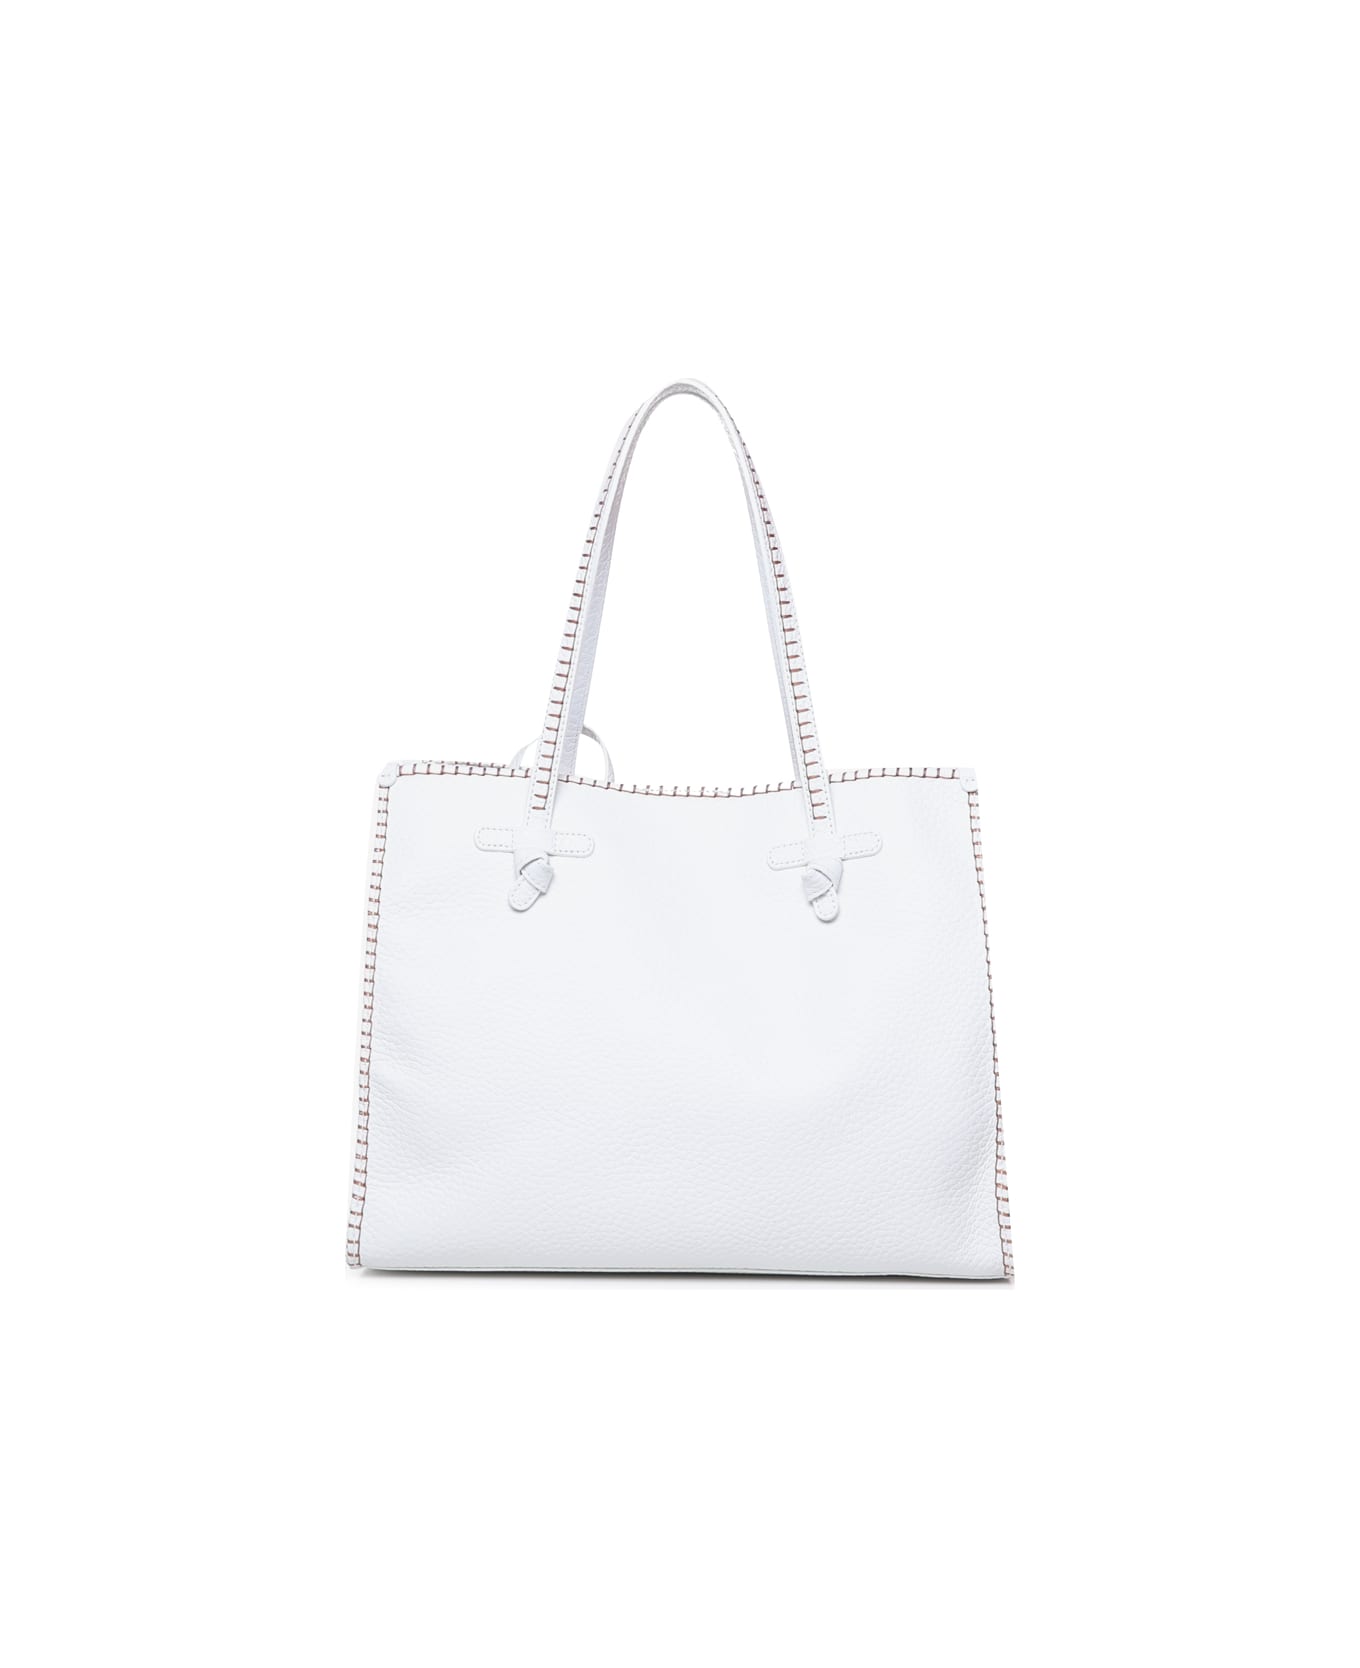 Gianni Chiarini Marcella Shopping Bag In Leather - White